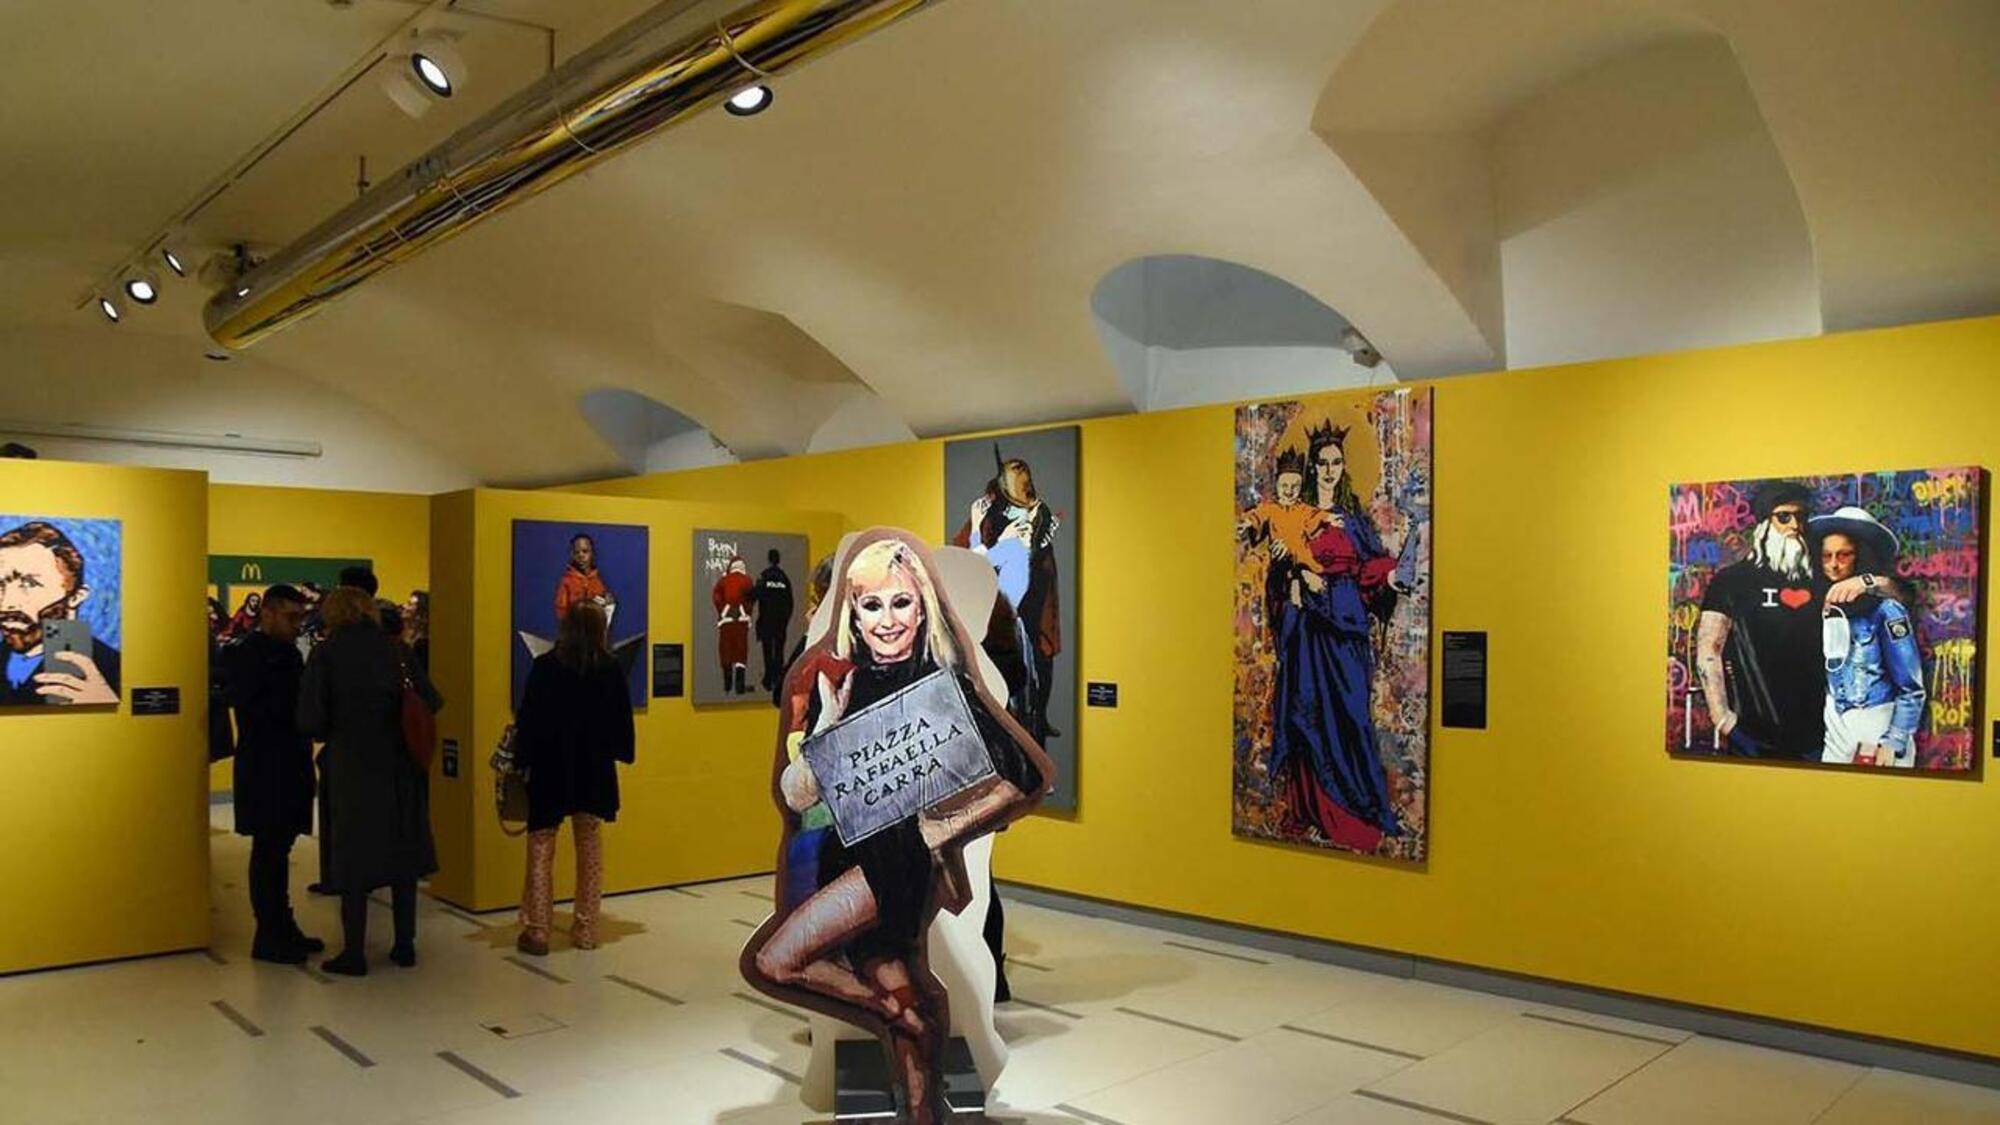 La mostra contemporanea e controcorrente di Biella con le opere di Banksy, Jago e TvBoy